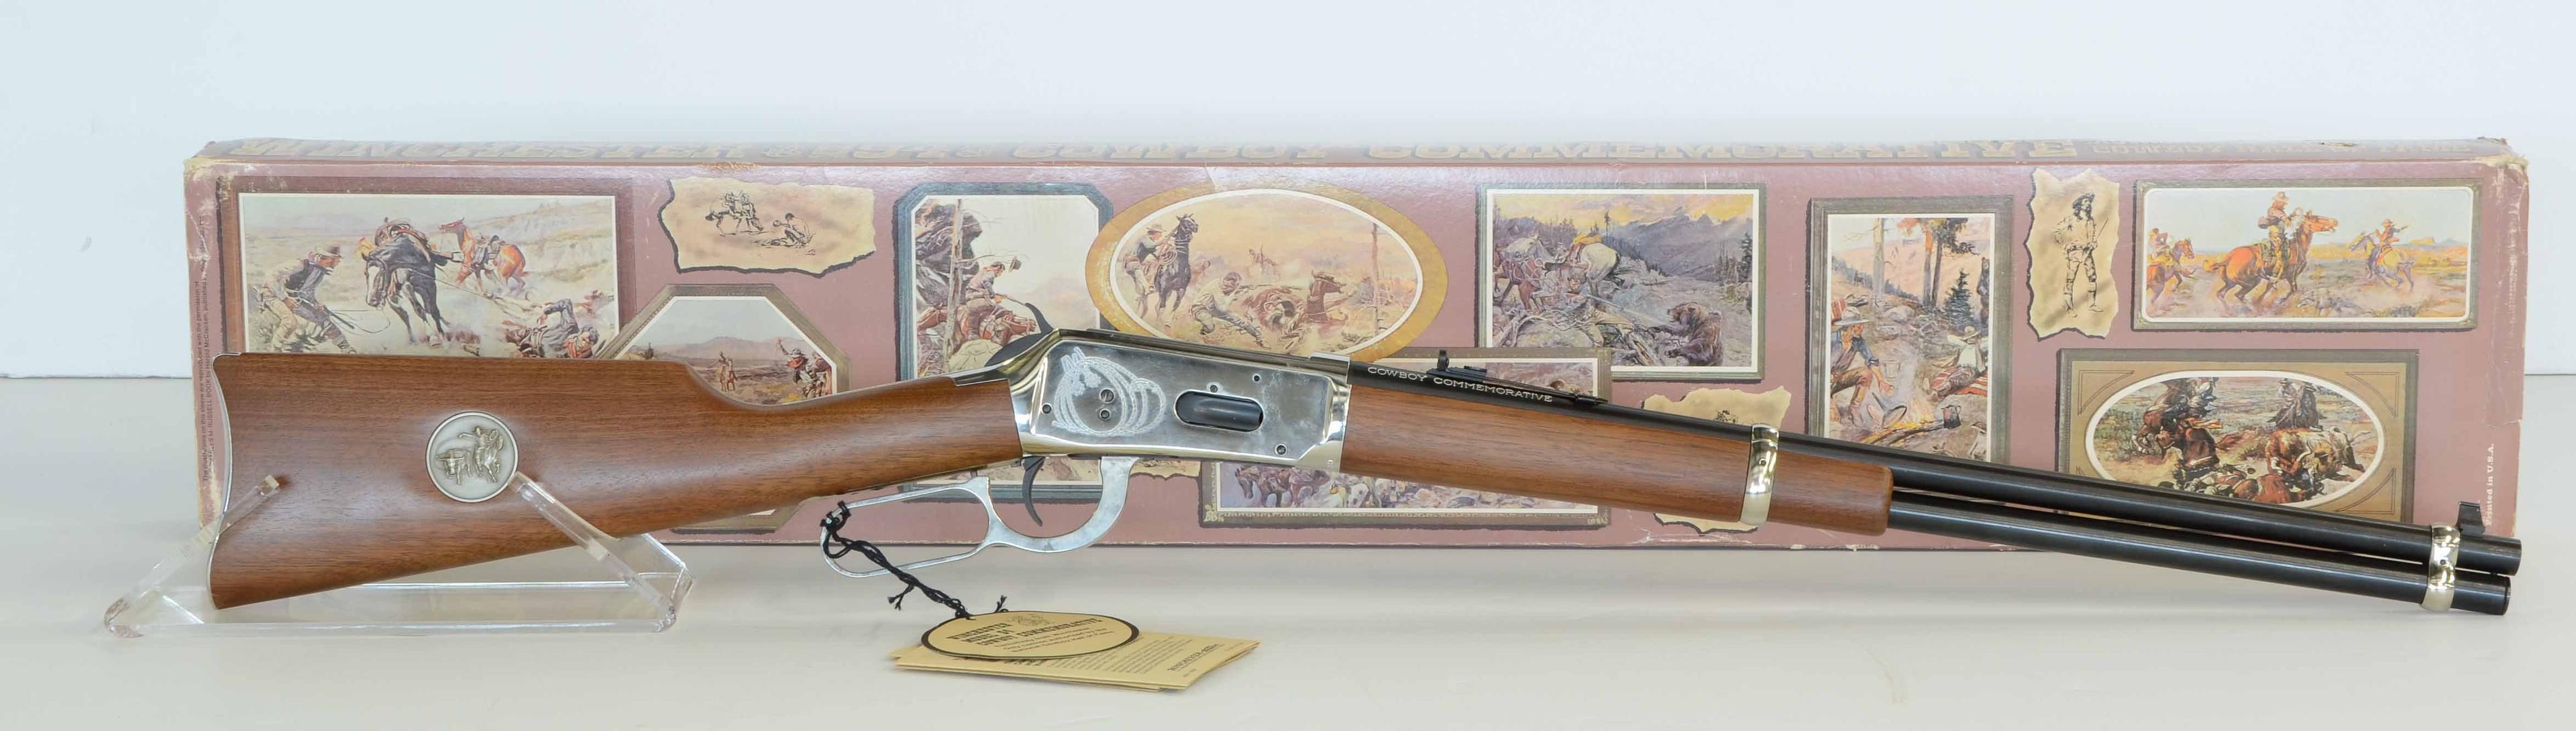 Winchester 94 / 1894 Cowboy Comm .30-30 NIB